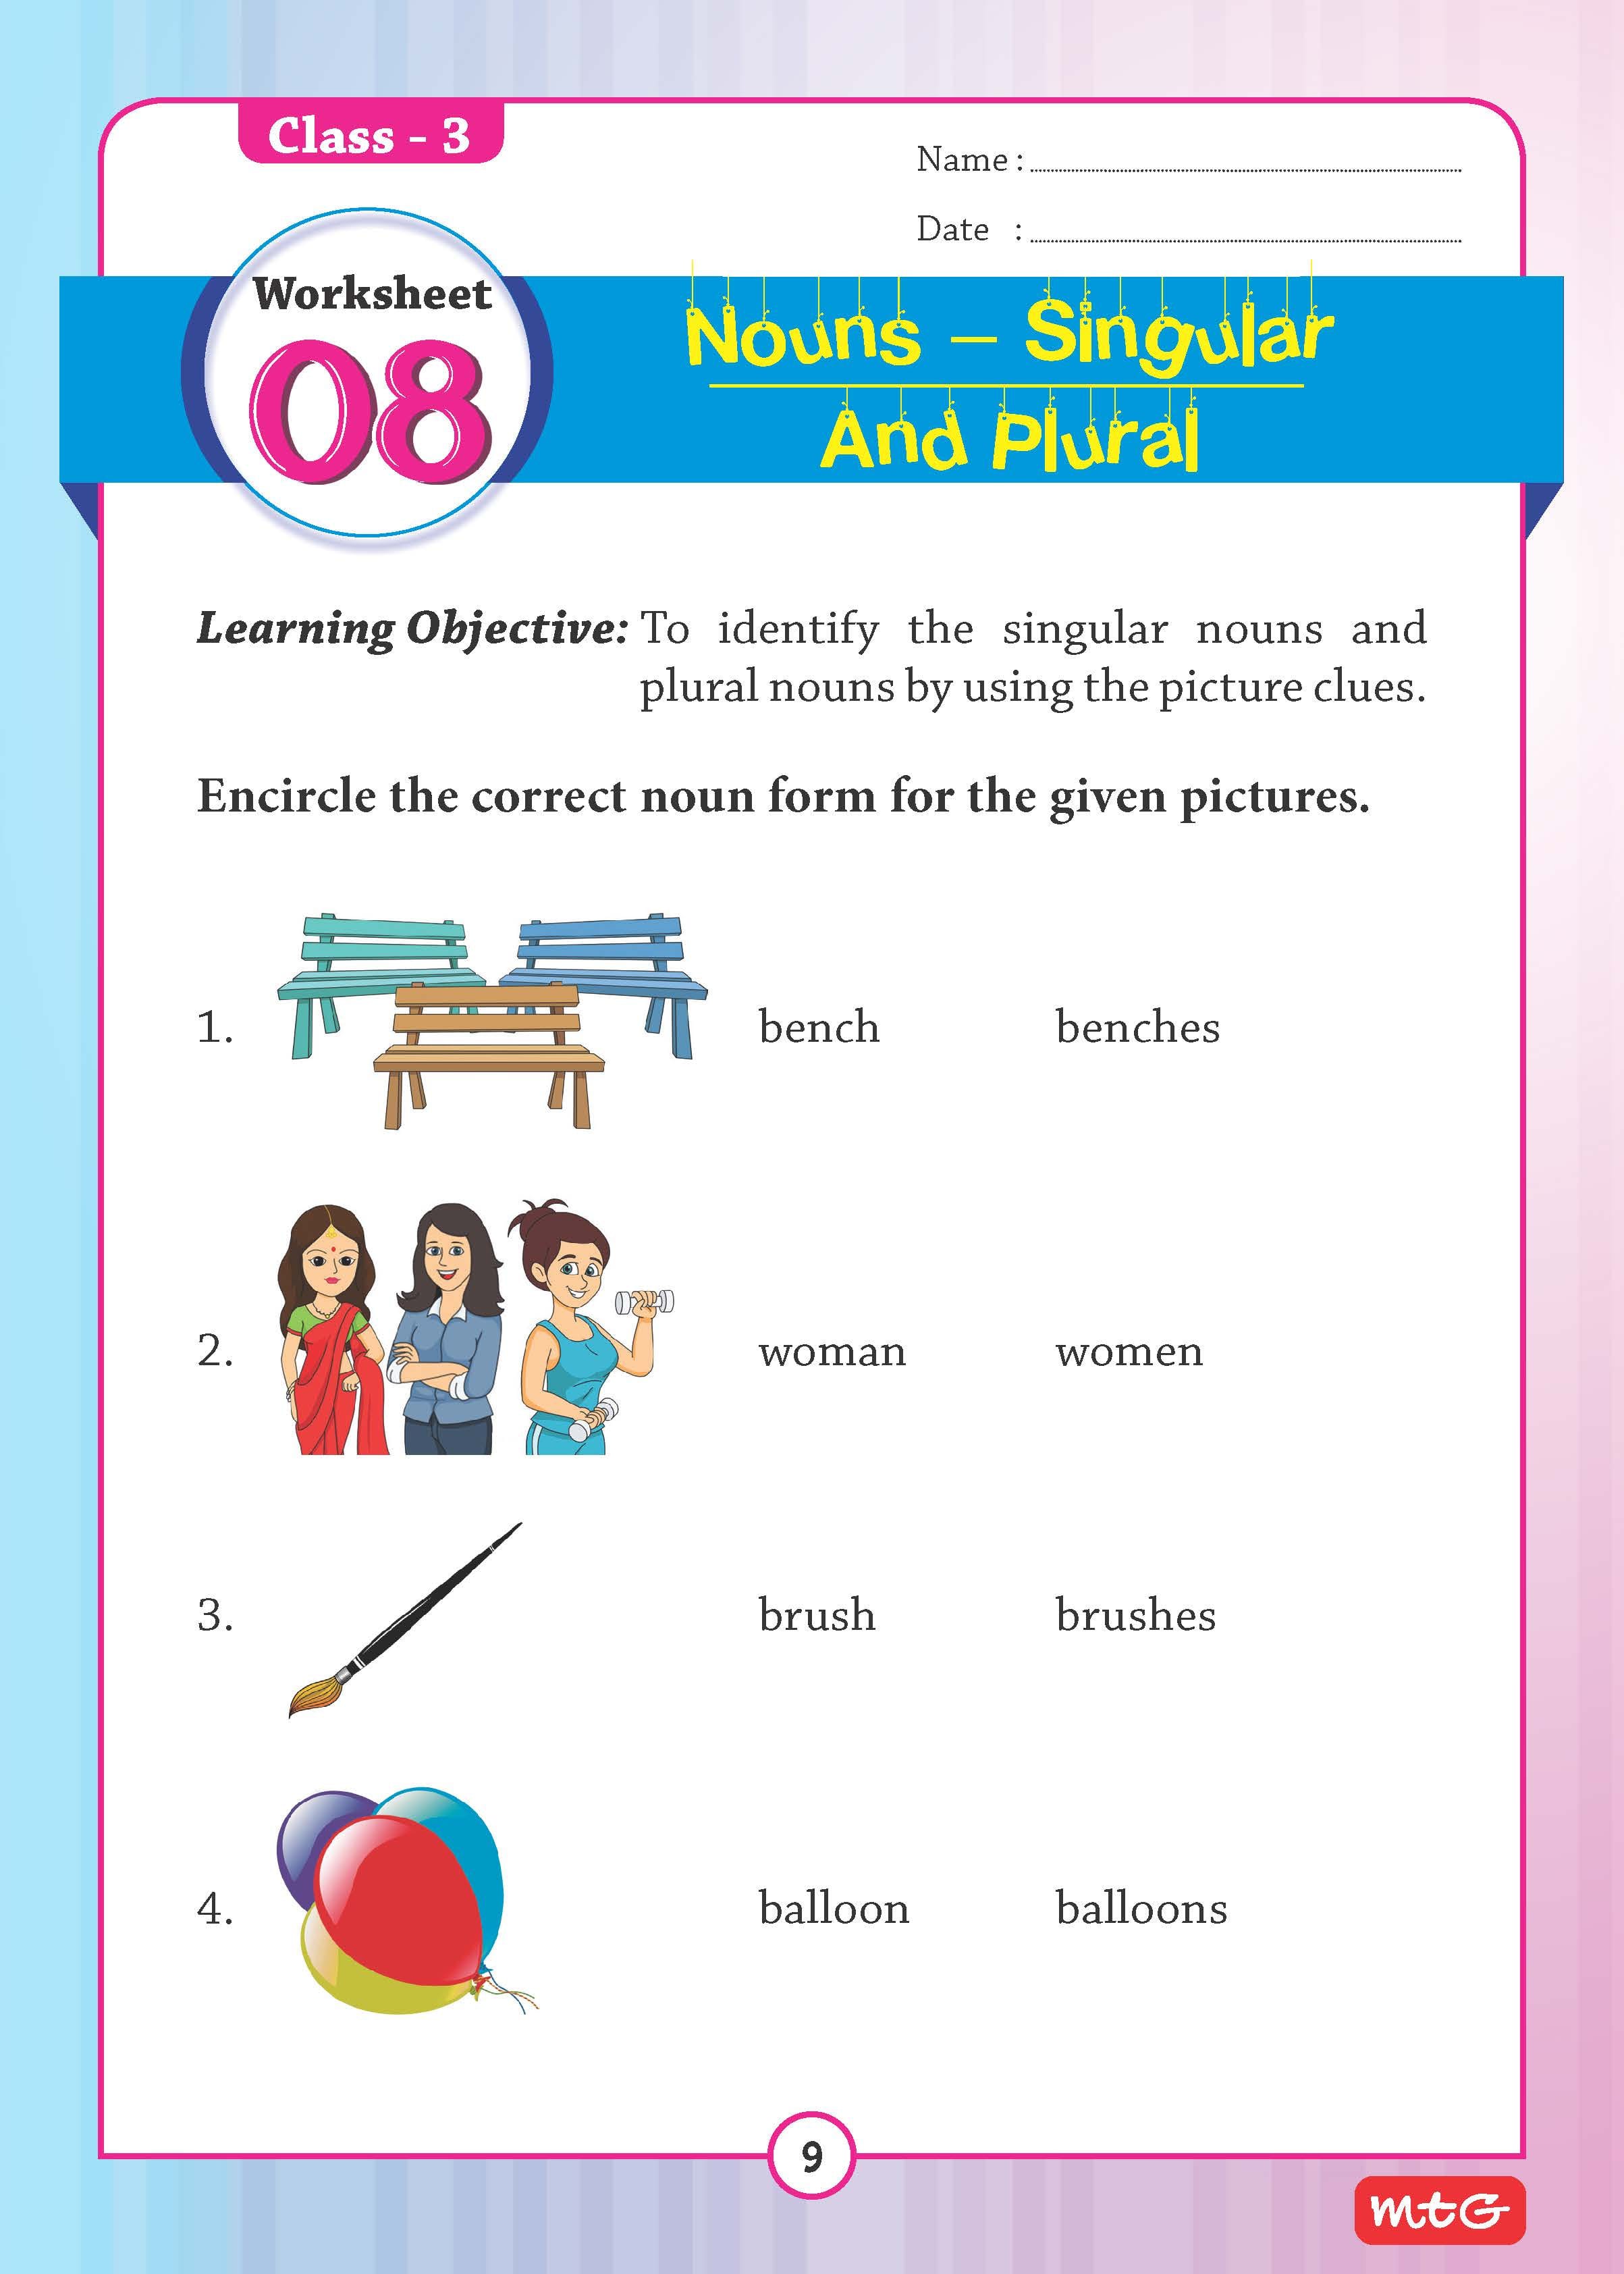 adverbs-worksheets-grade-2-sample-adverbs-worksheet-2nd-grade-worksheets-adverbs-practice